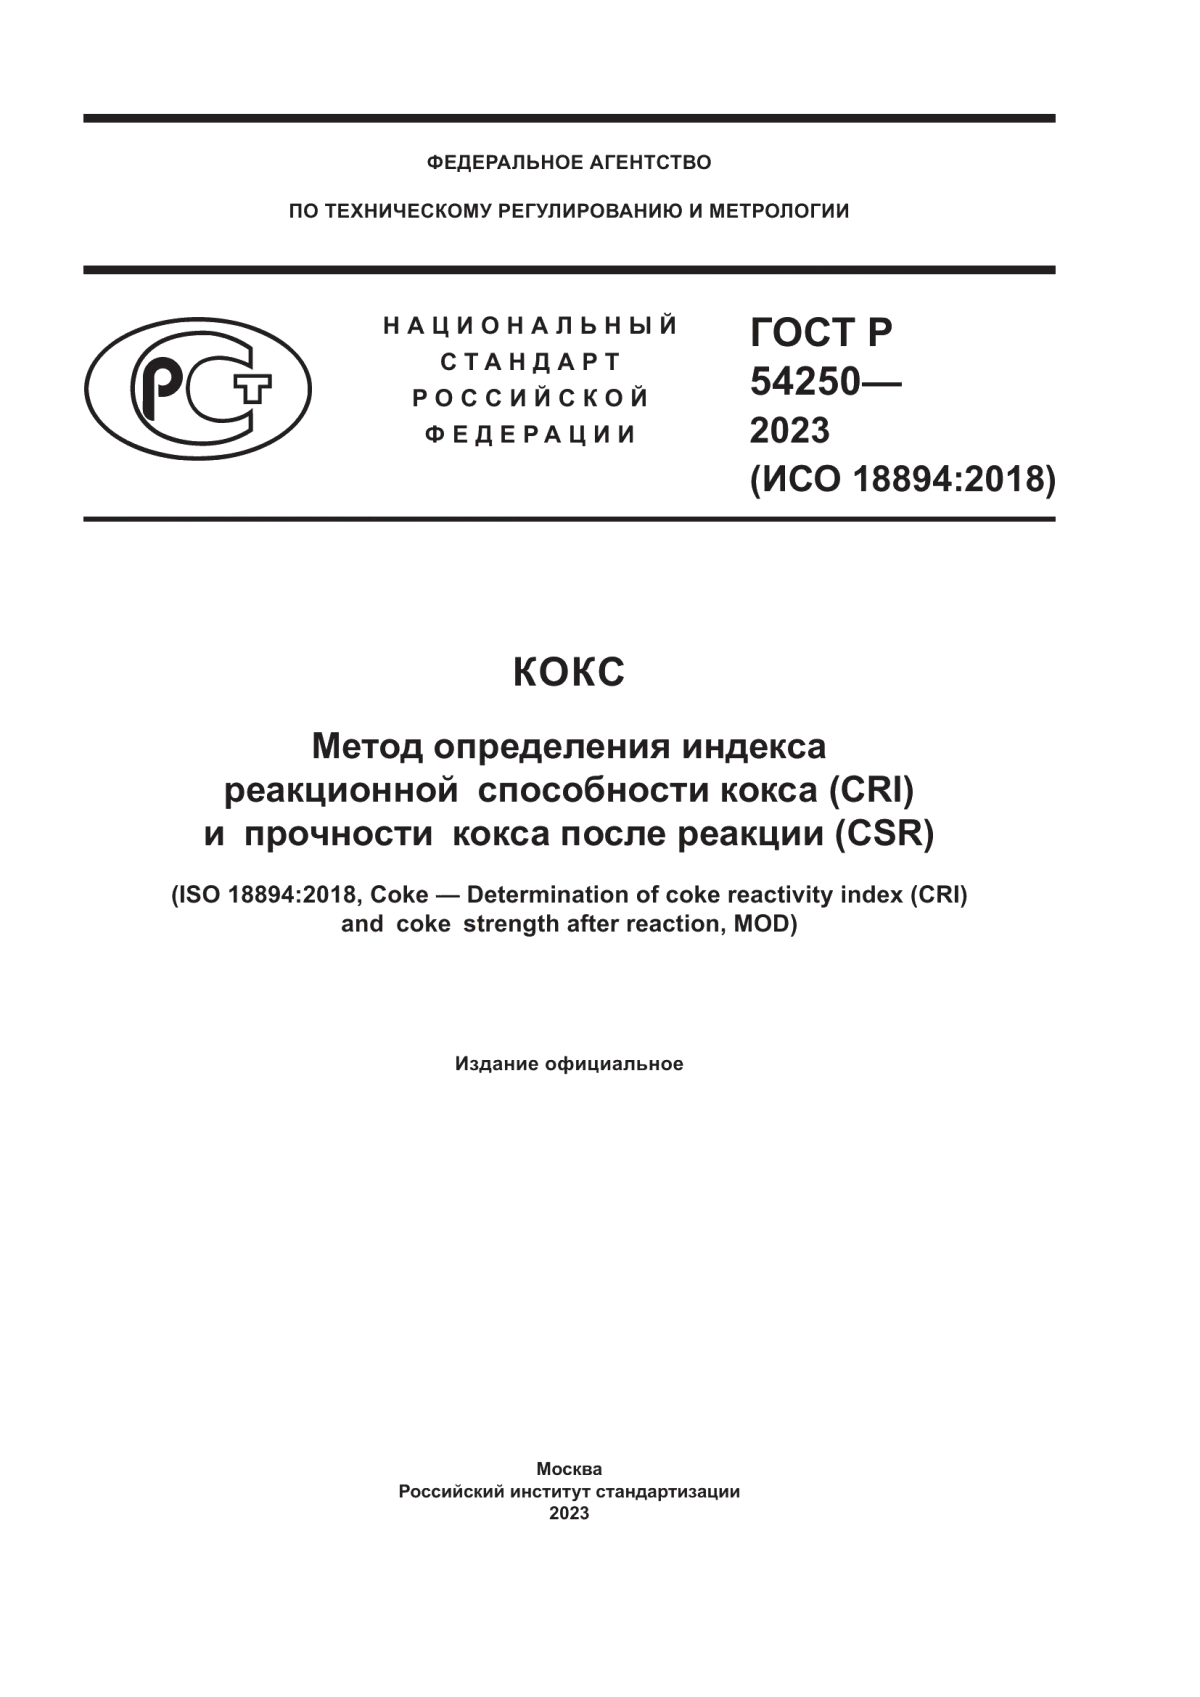 ГОСТ Р 54250-2023 Кокс. Метод определения индекса реакционной способности кокса (CRI) и прочности кокса после реакции (CSR)